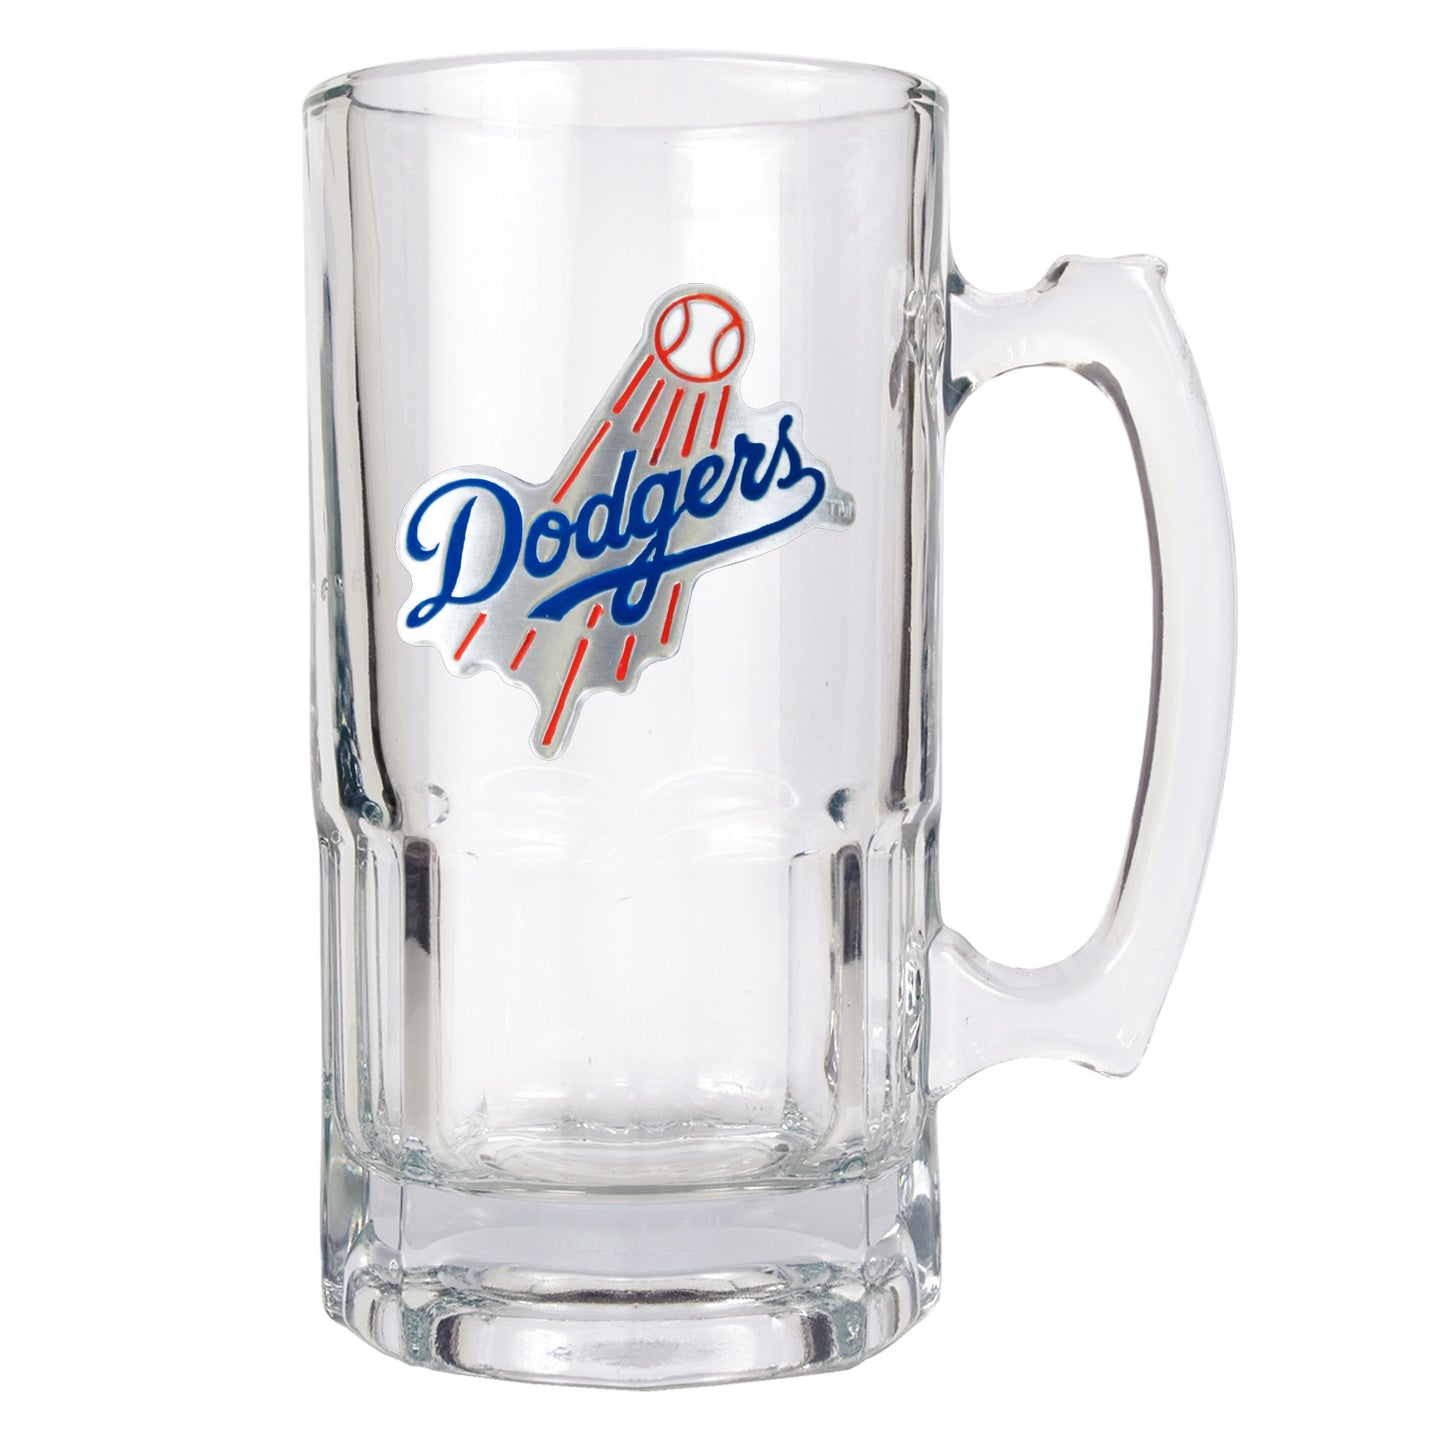 Los Angeles Dodgers Mug